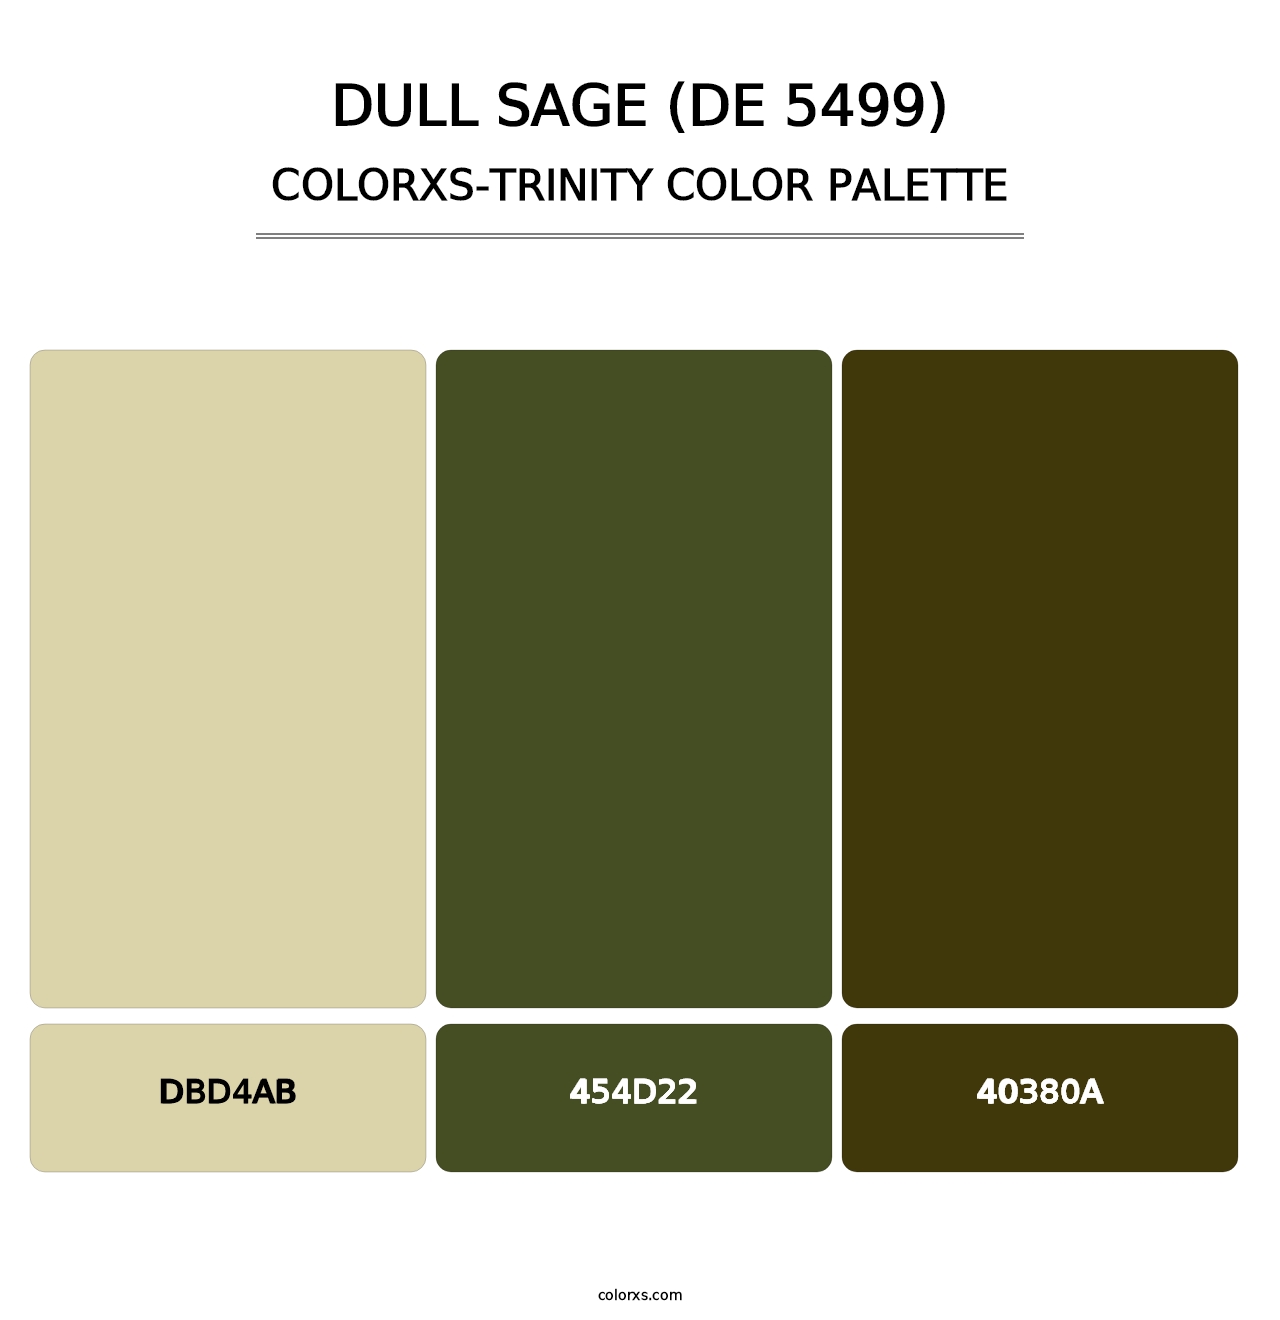 Dull Sage (DE 5499) - Colorxs Trinity Palette